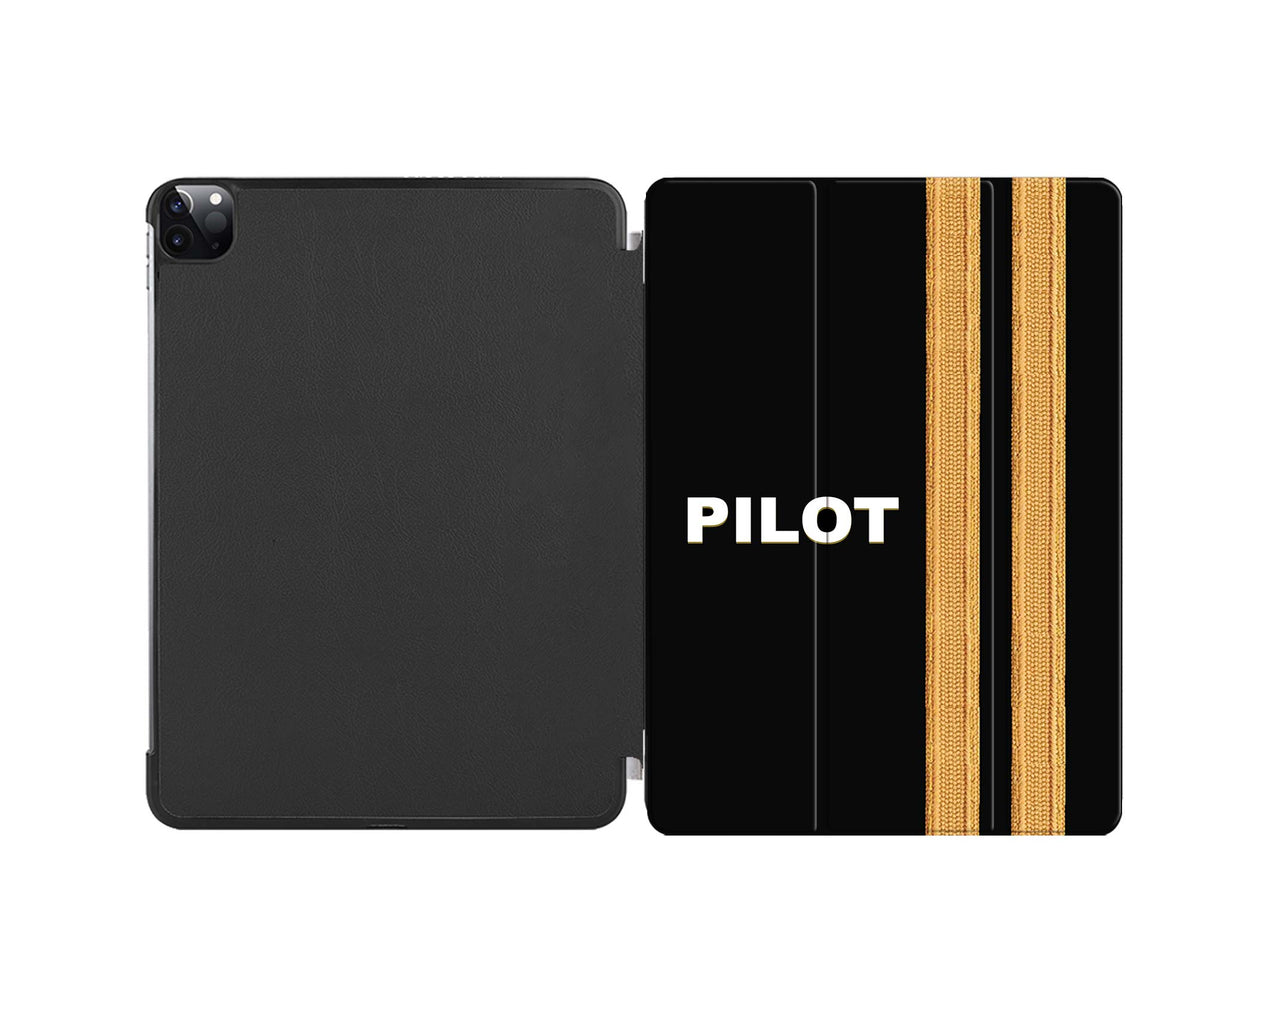 Pilot & Epaulettes (2 Lines) Designed iPad Cases